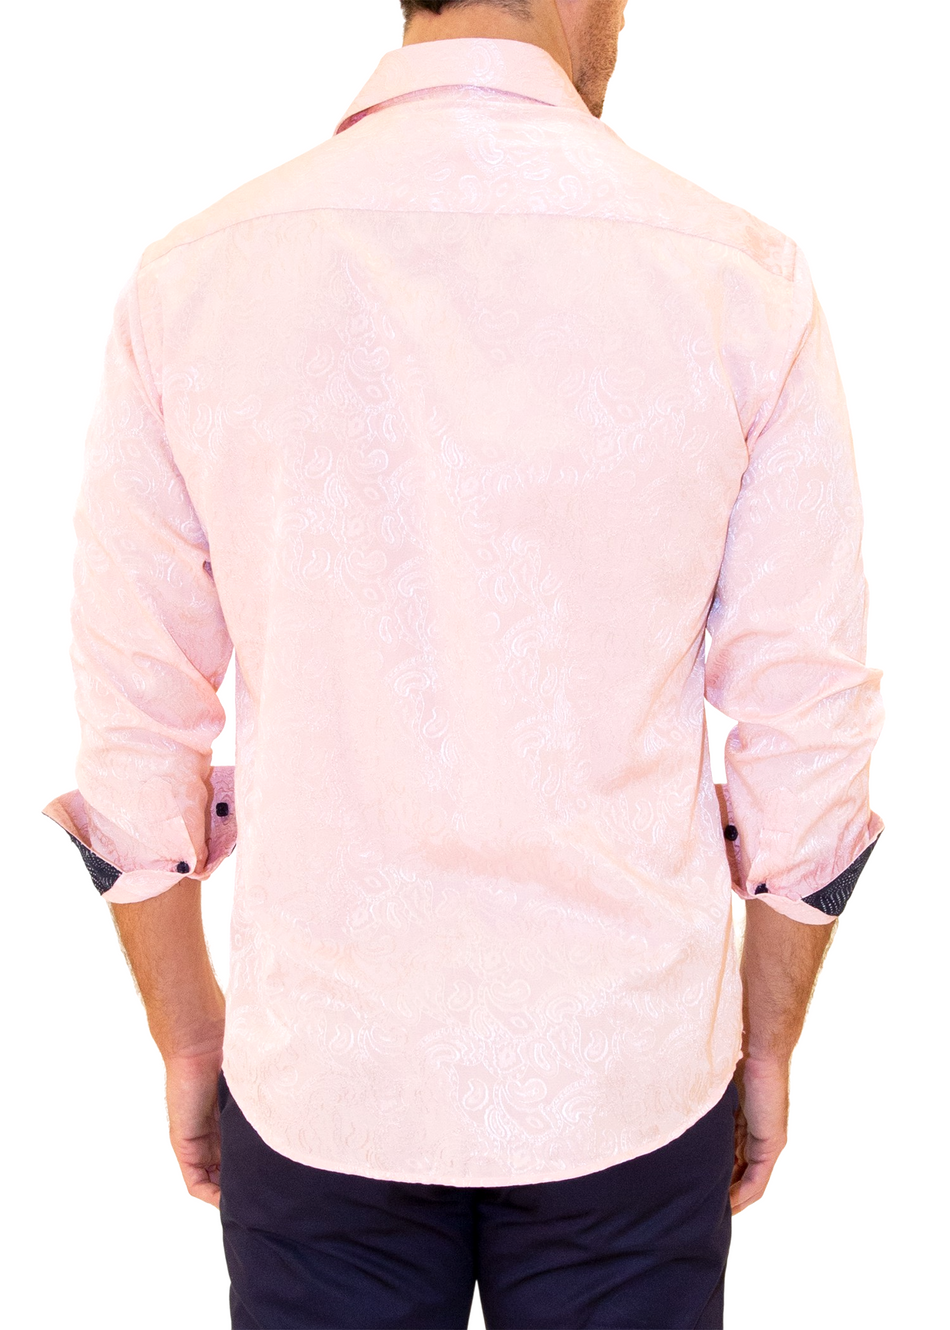 BESPOKE - Men's Pink Long Sleeve Dress Shirt - Modern Fit - 202507 